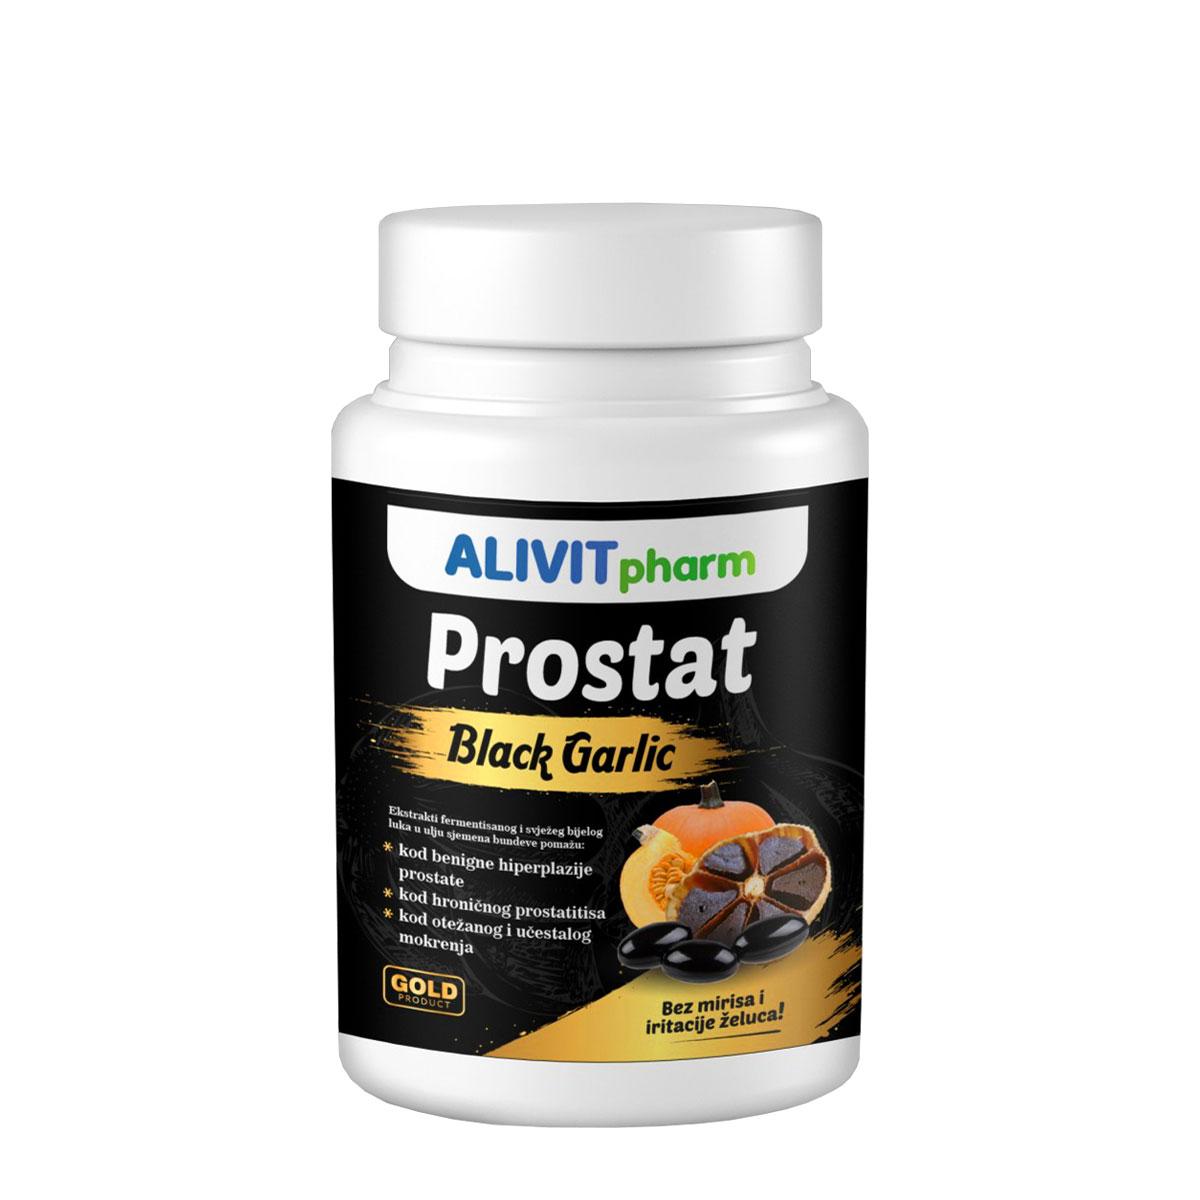 ALIVIT PHARM Black garlic Prostat 60 kapsula